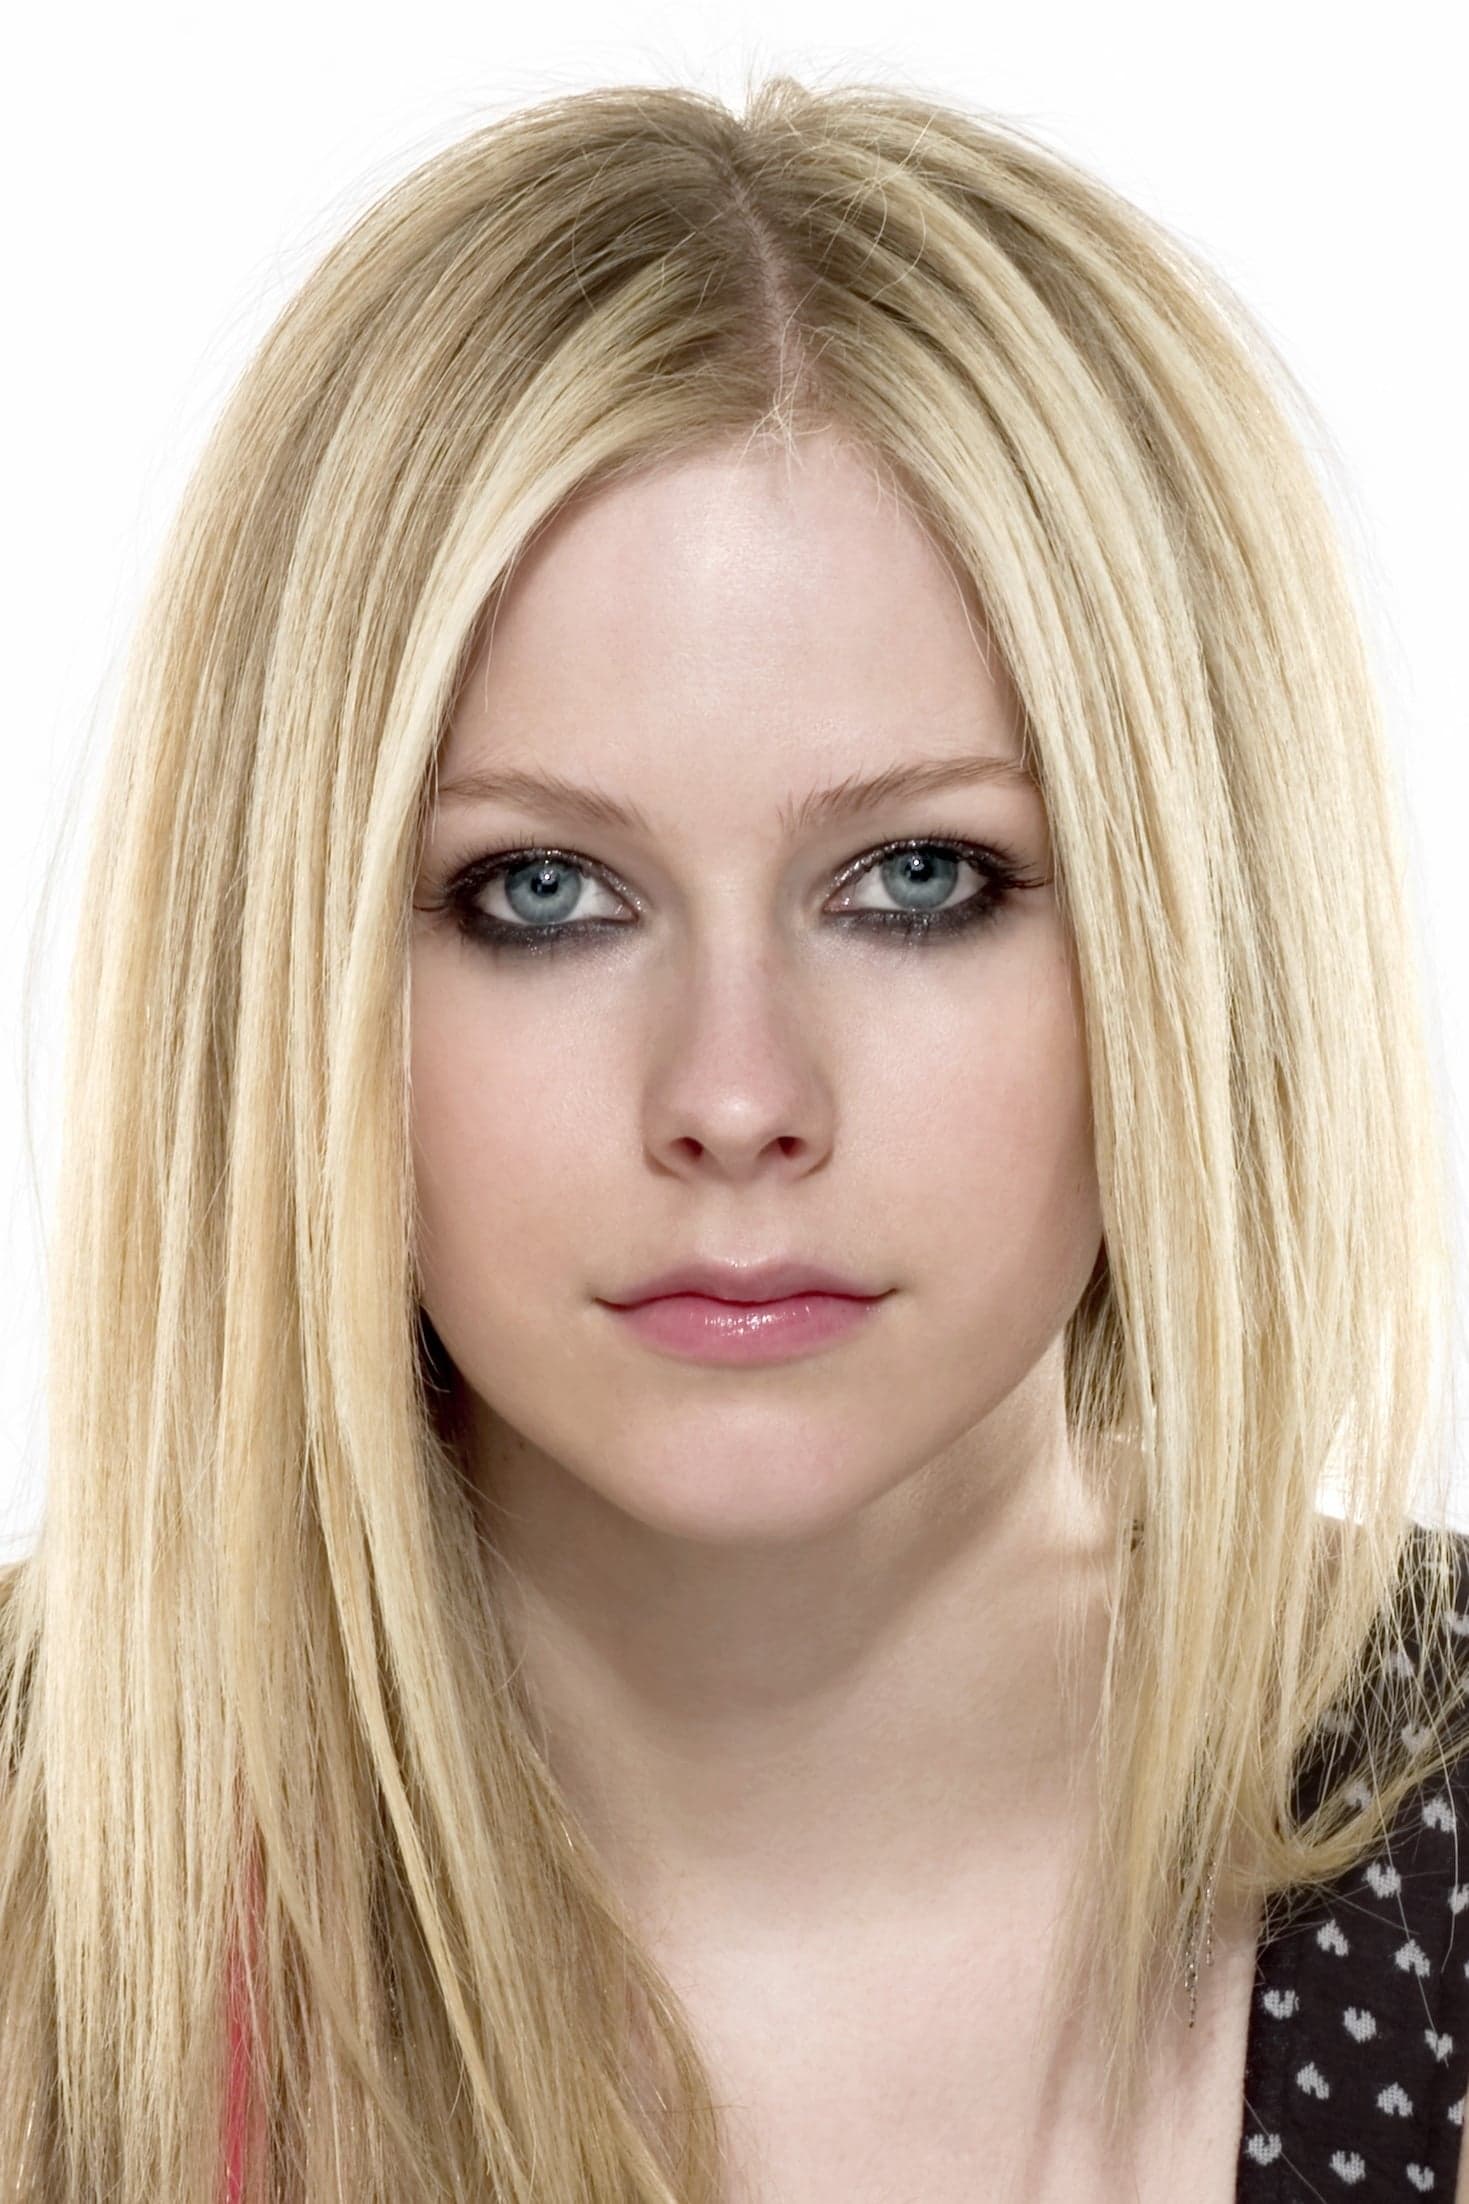 Avril Lavigne | Self - Vocals